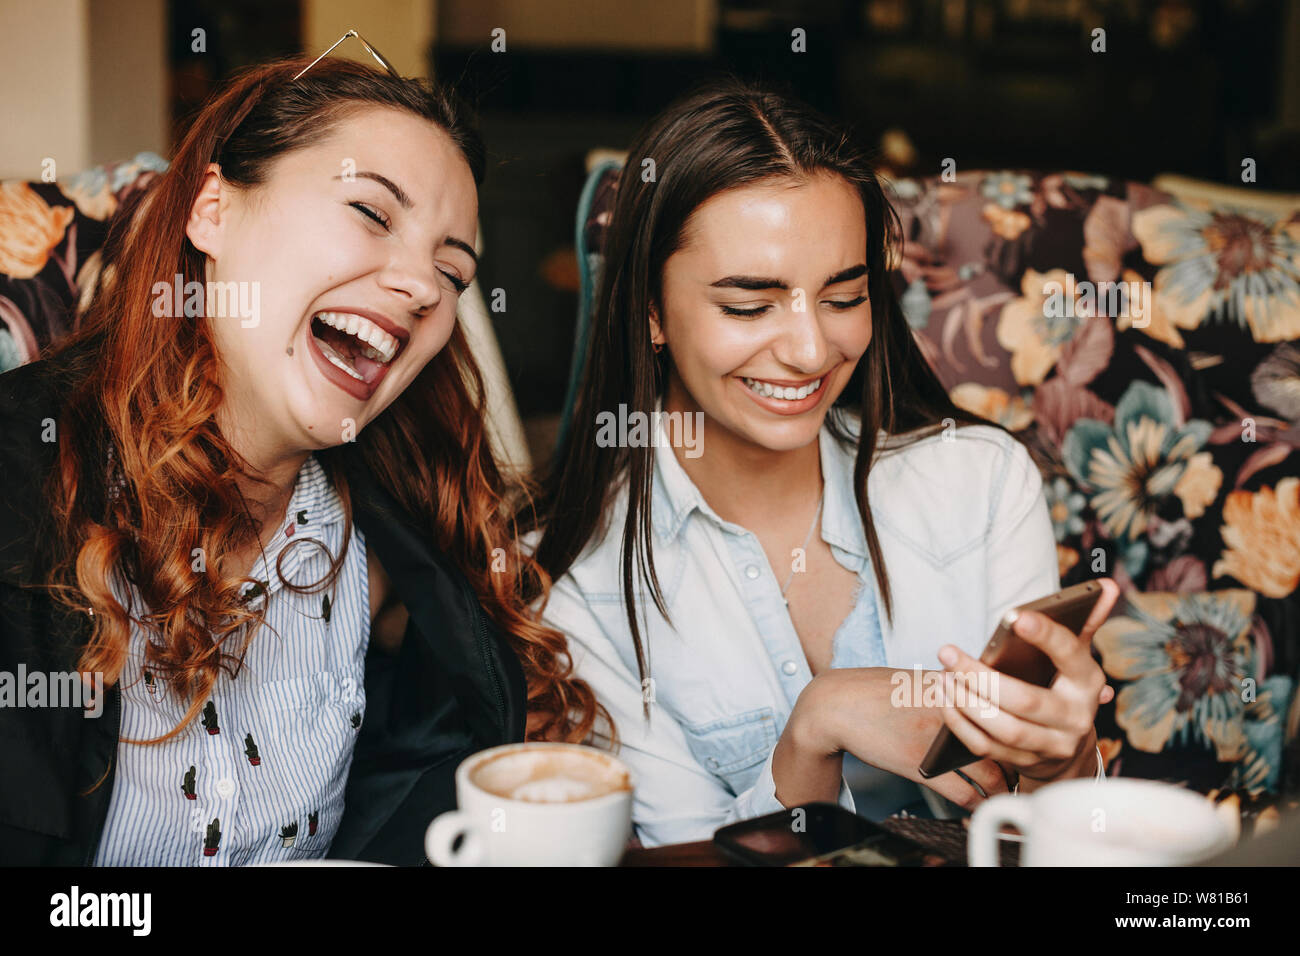 Reizende junge Frau plus größe Spaß Lachen mit geschlossenen Augen, während ihre Freundin etwas auf Ihrem Smartphone zeigte, während Kaffee trinken in einem c Stockfoto